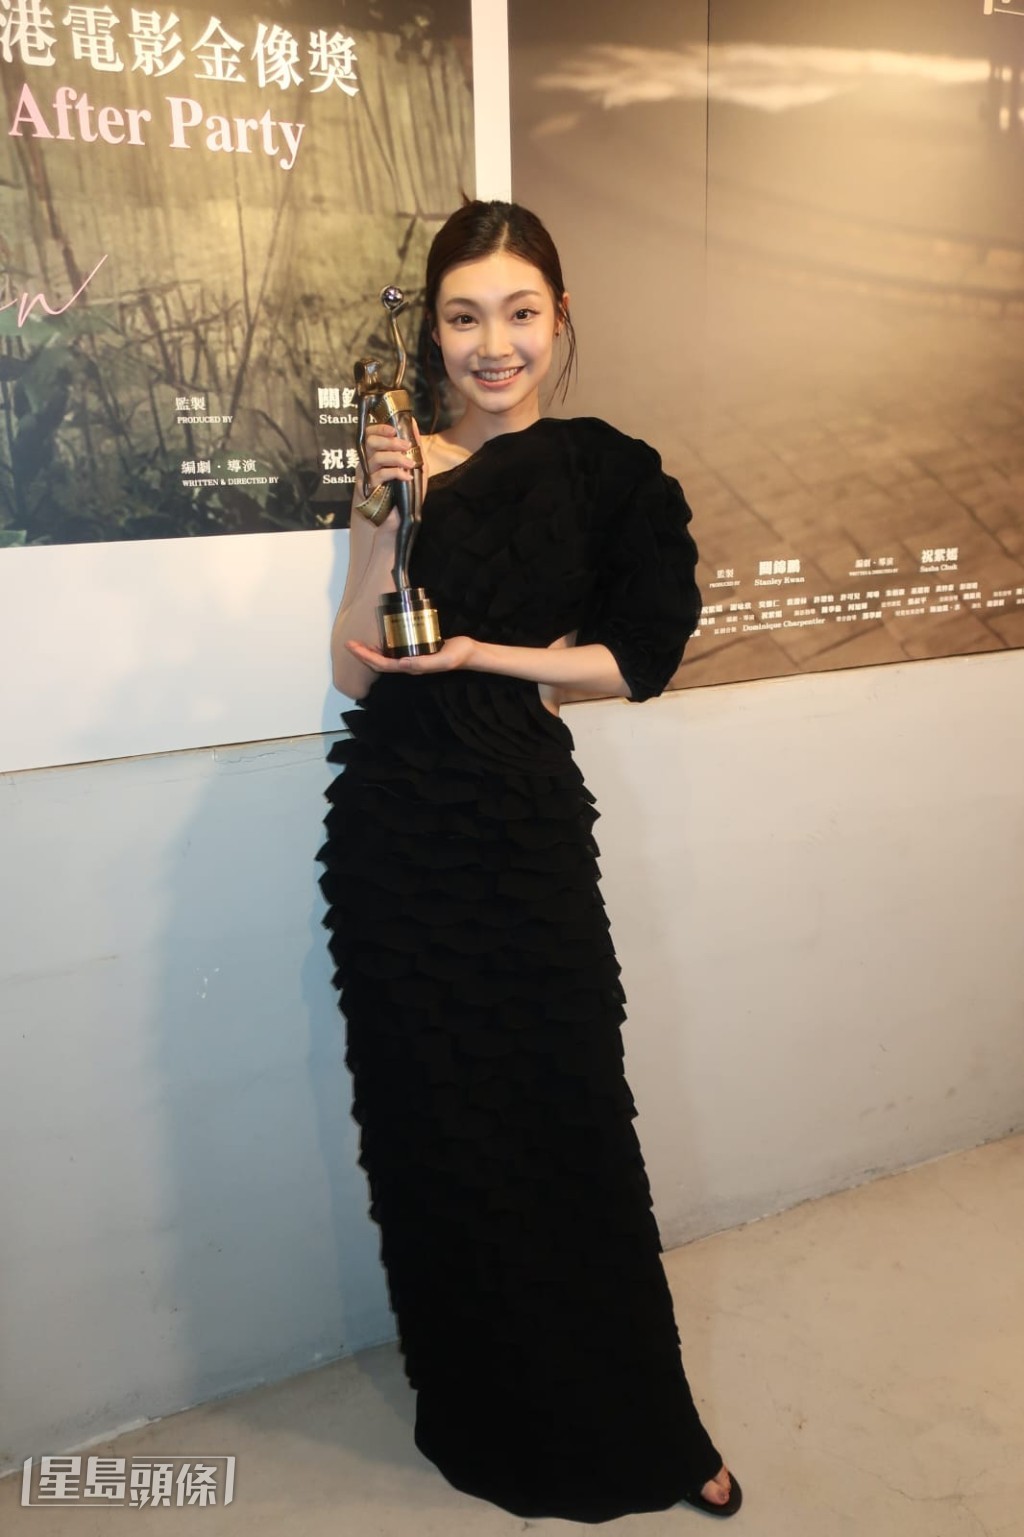  謝咏欣說獎項是給《但》片台前幕後。